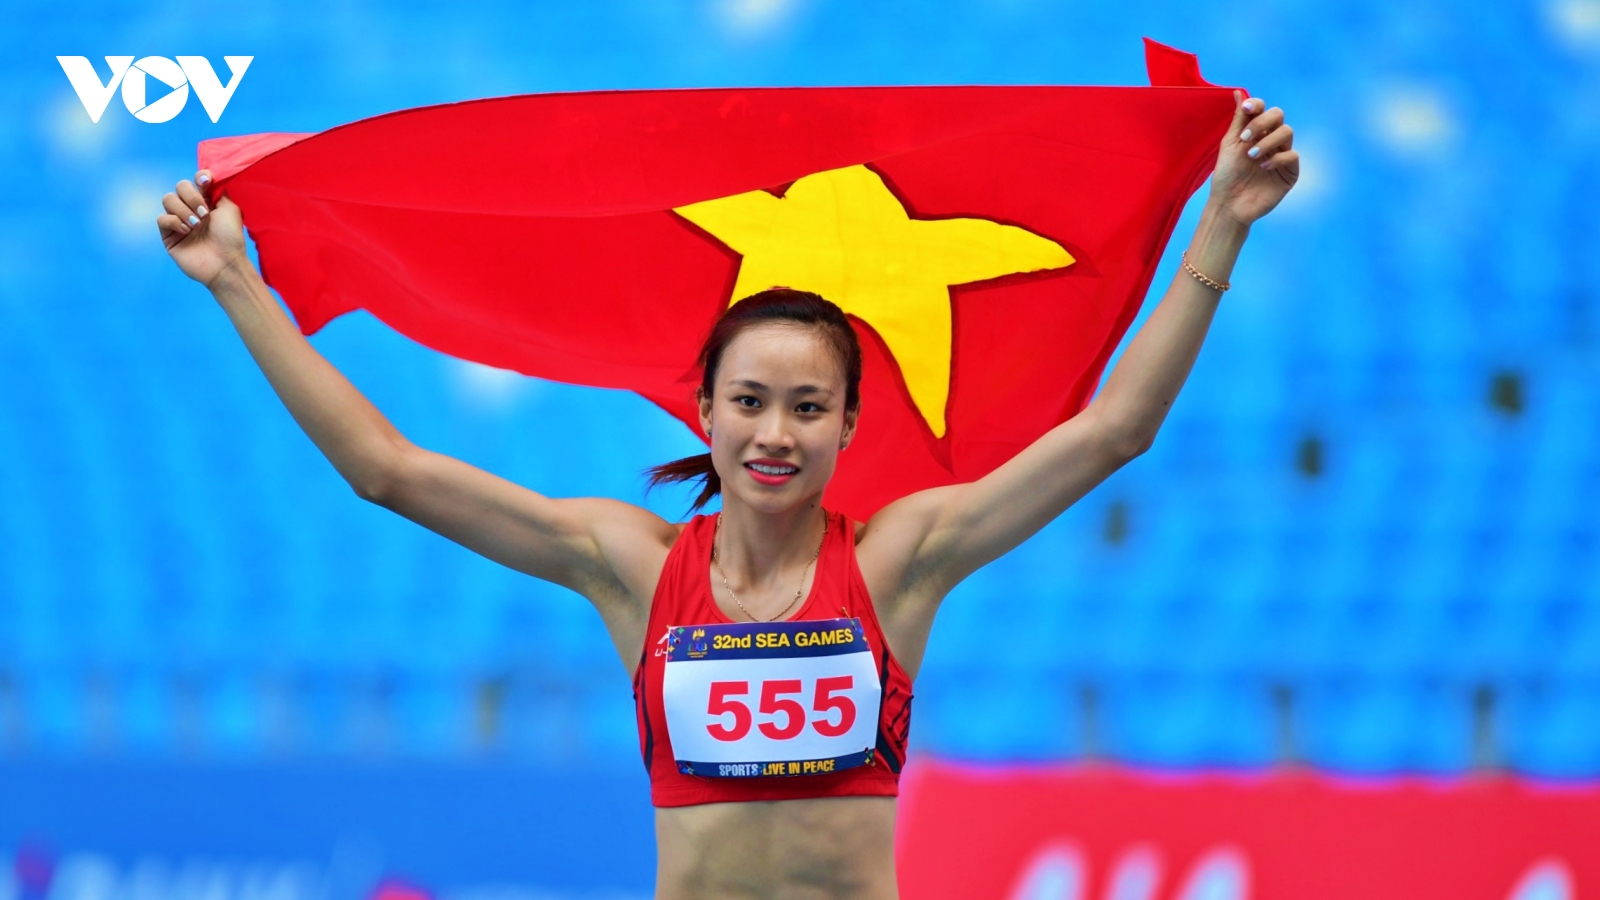 Huỳnh Thị Mỹ Tiên và 12 năm đi tìm “nụ cười vàng” ở đấu trường SEA Games